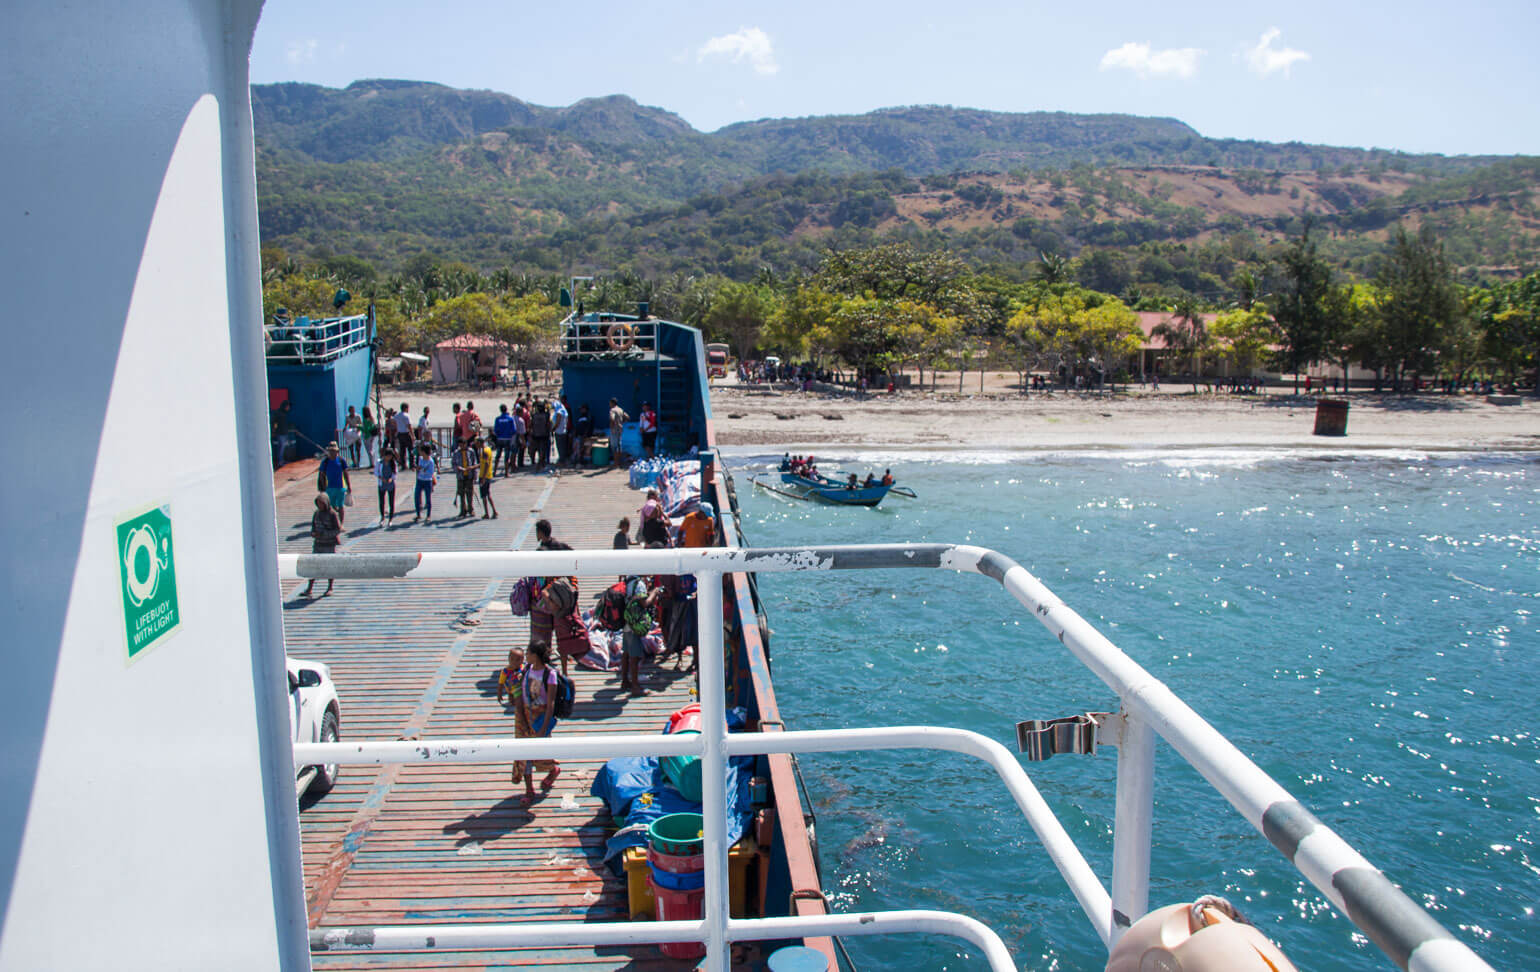 The Laju Laju ferry